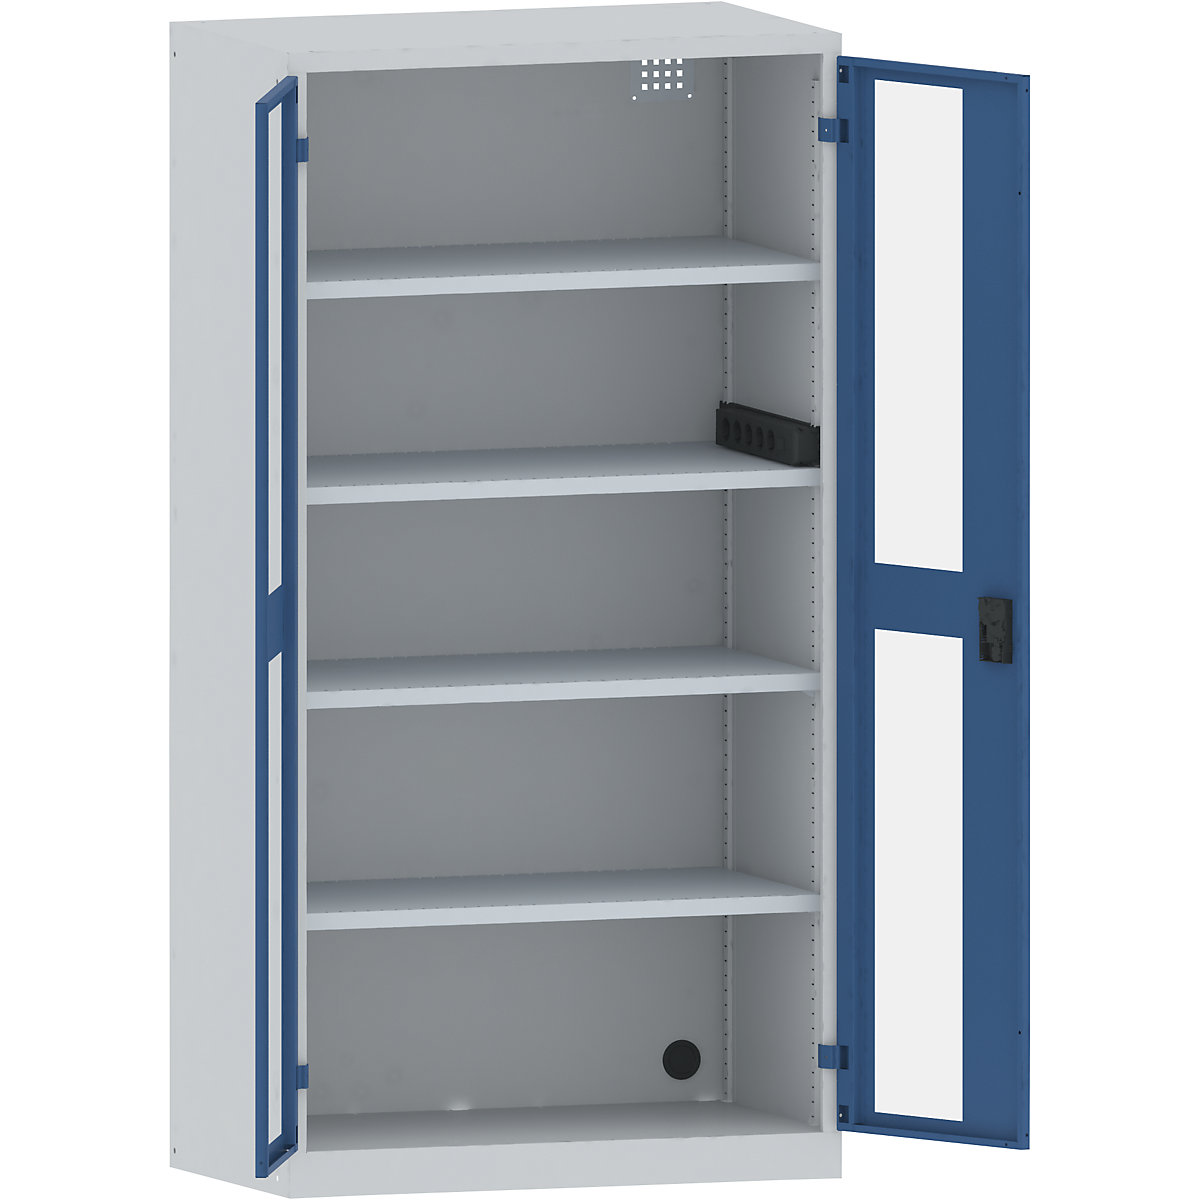 Armário de carregamento – LISTA, 4 prateleiras, portas com janelas de visualização, régua de tomadas lateral, cinzento/azul-14